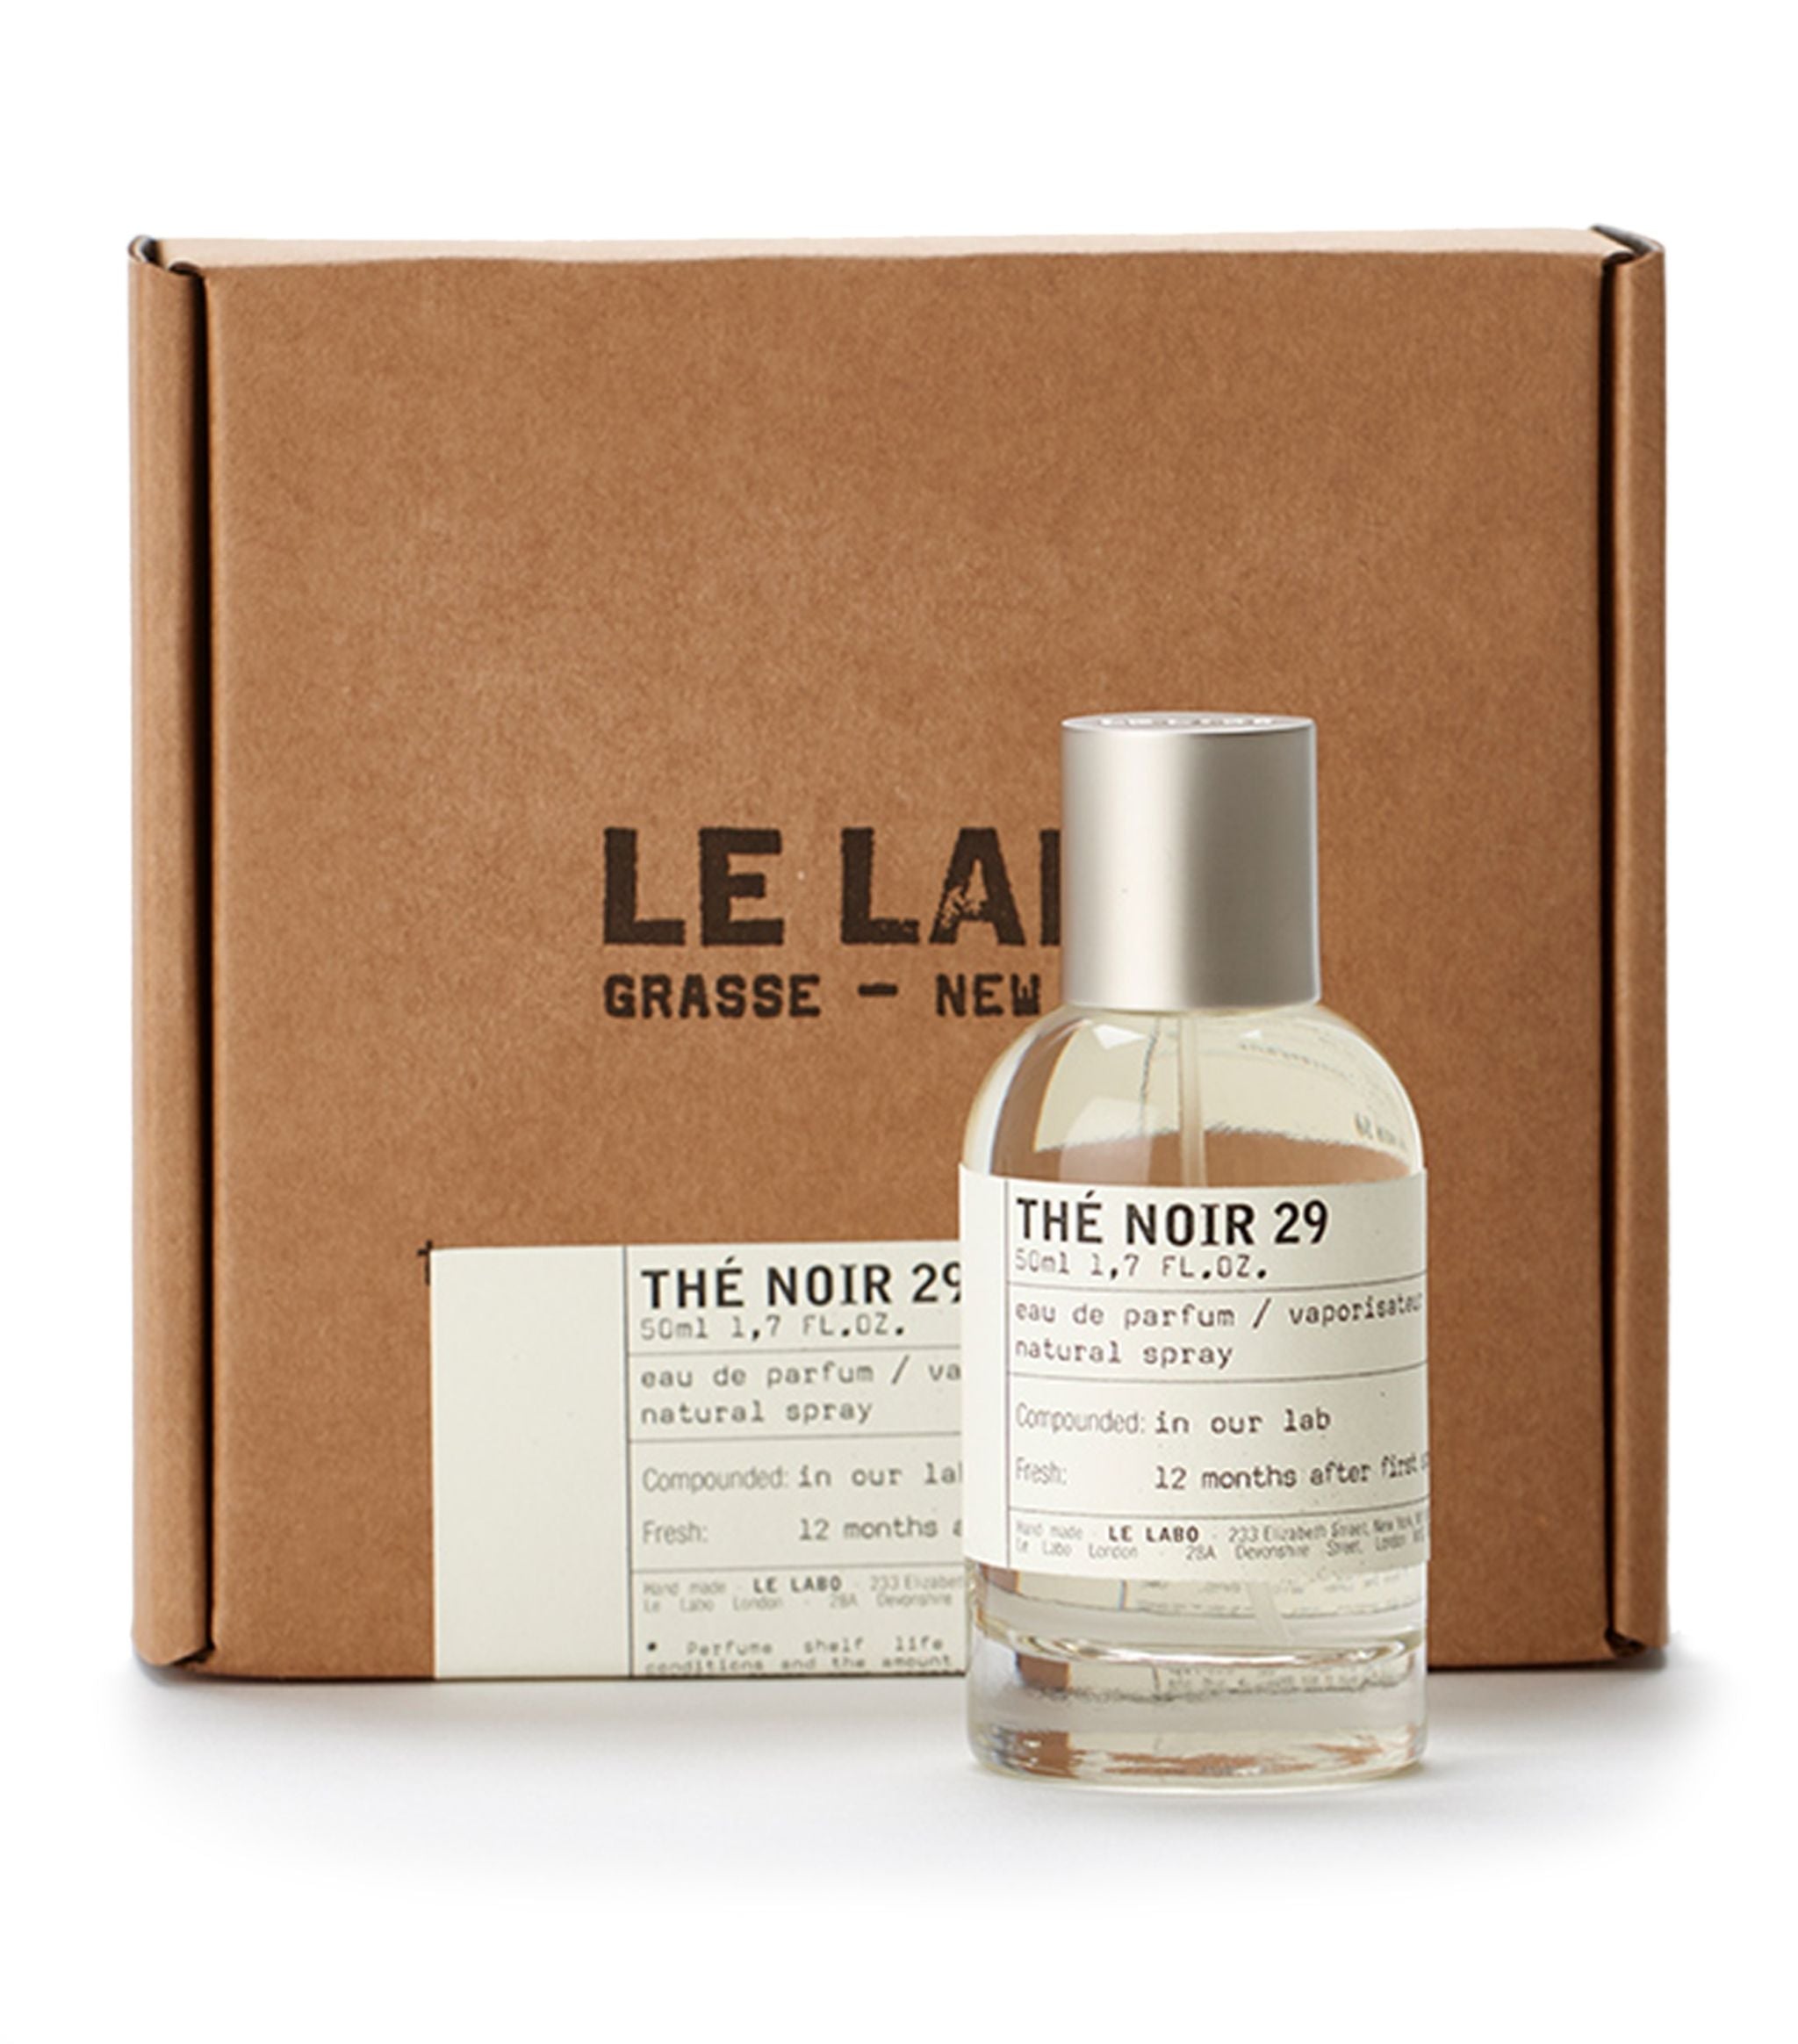 Ombre Nomade Eau De Parfum – The Fragrance Lab